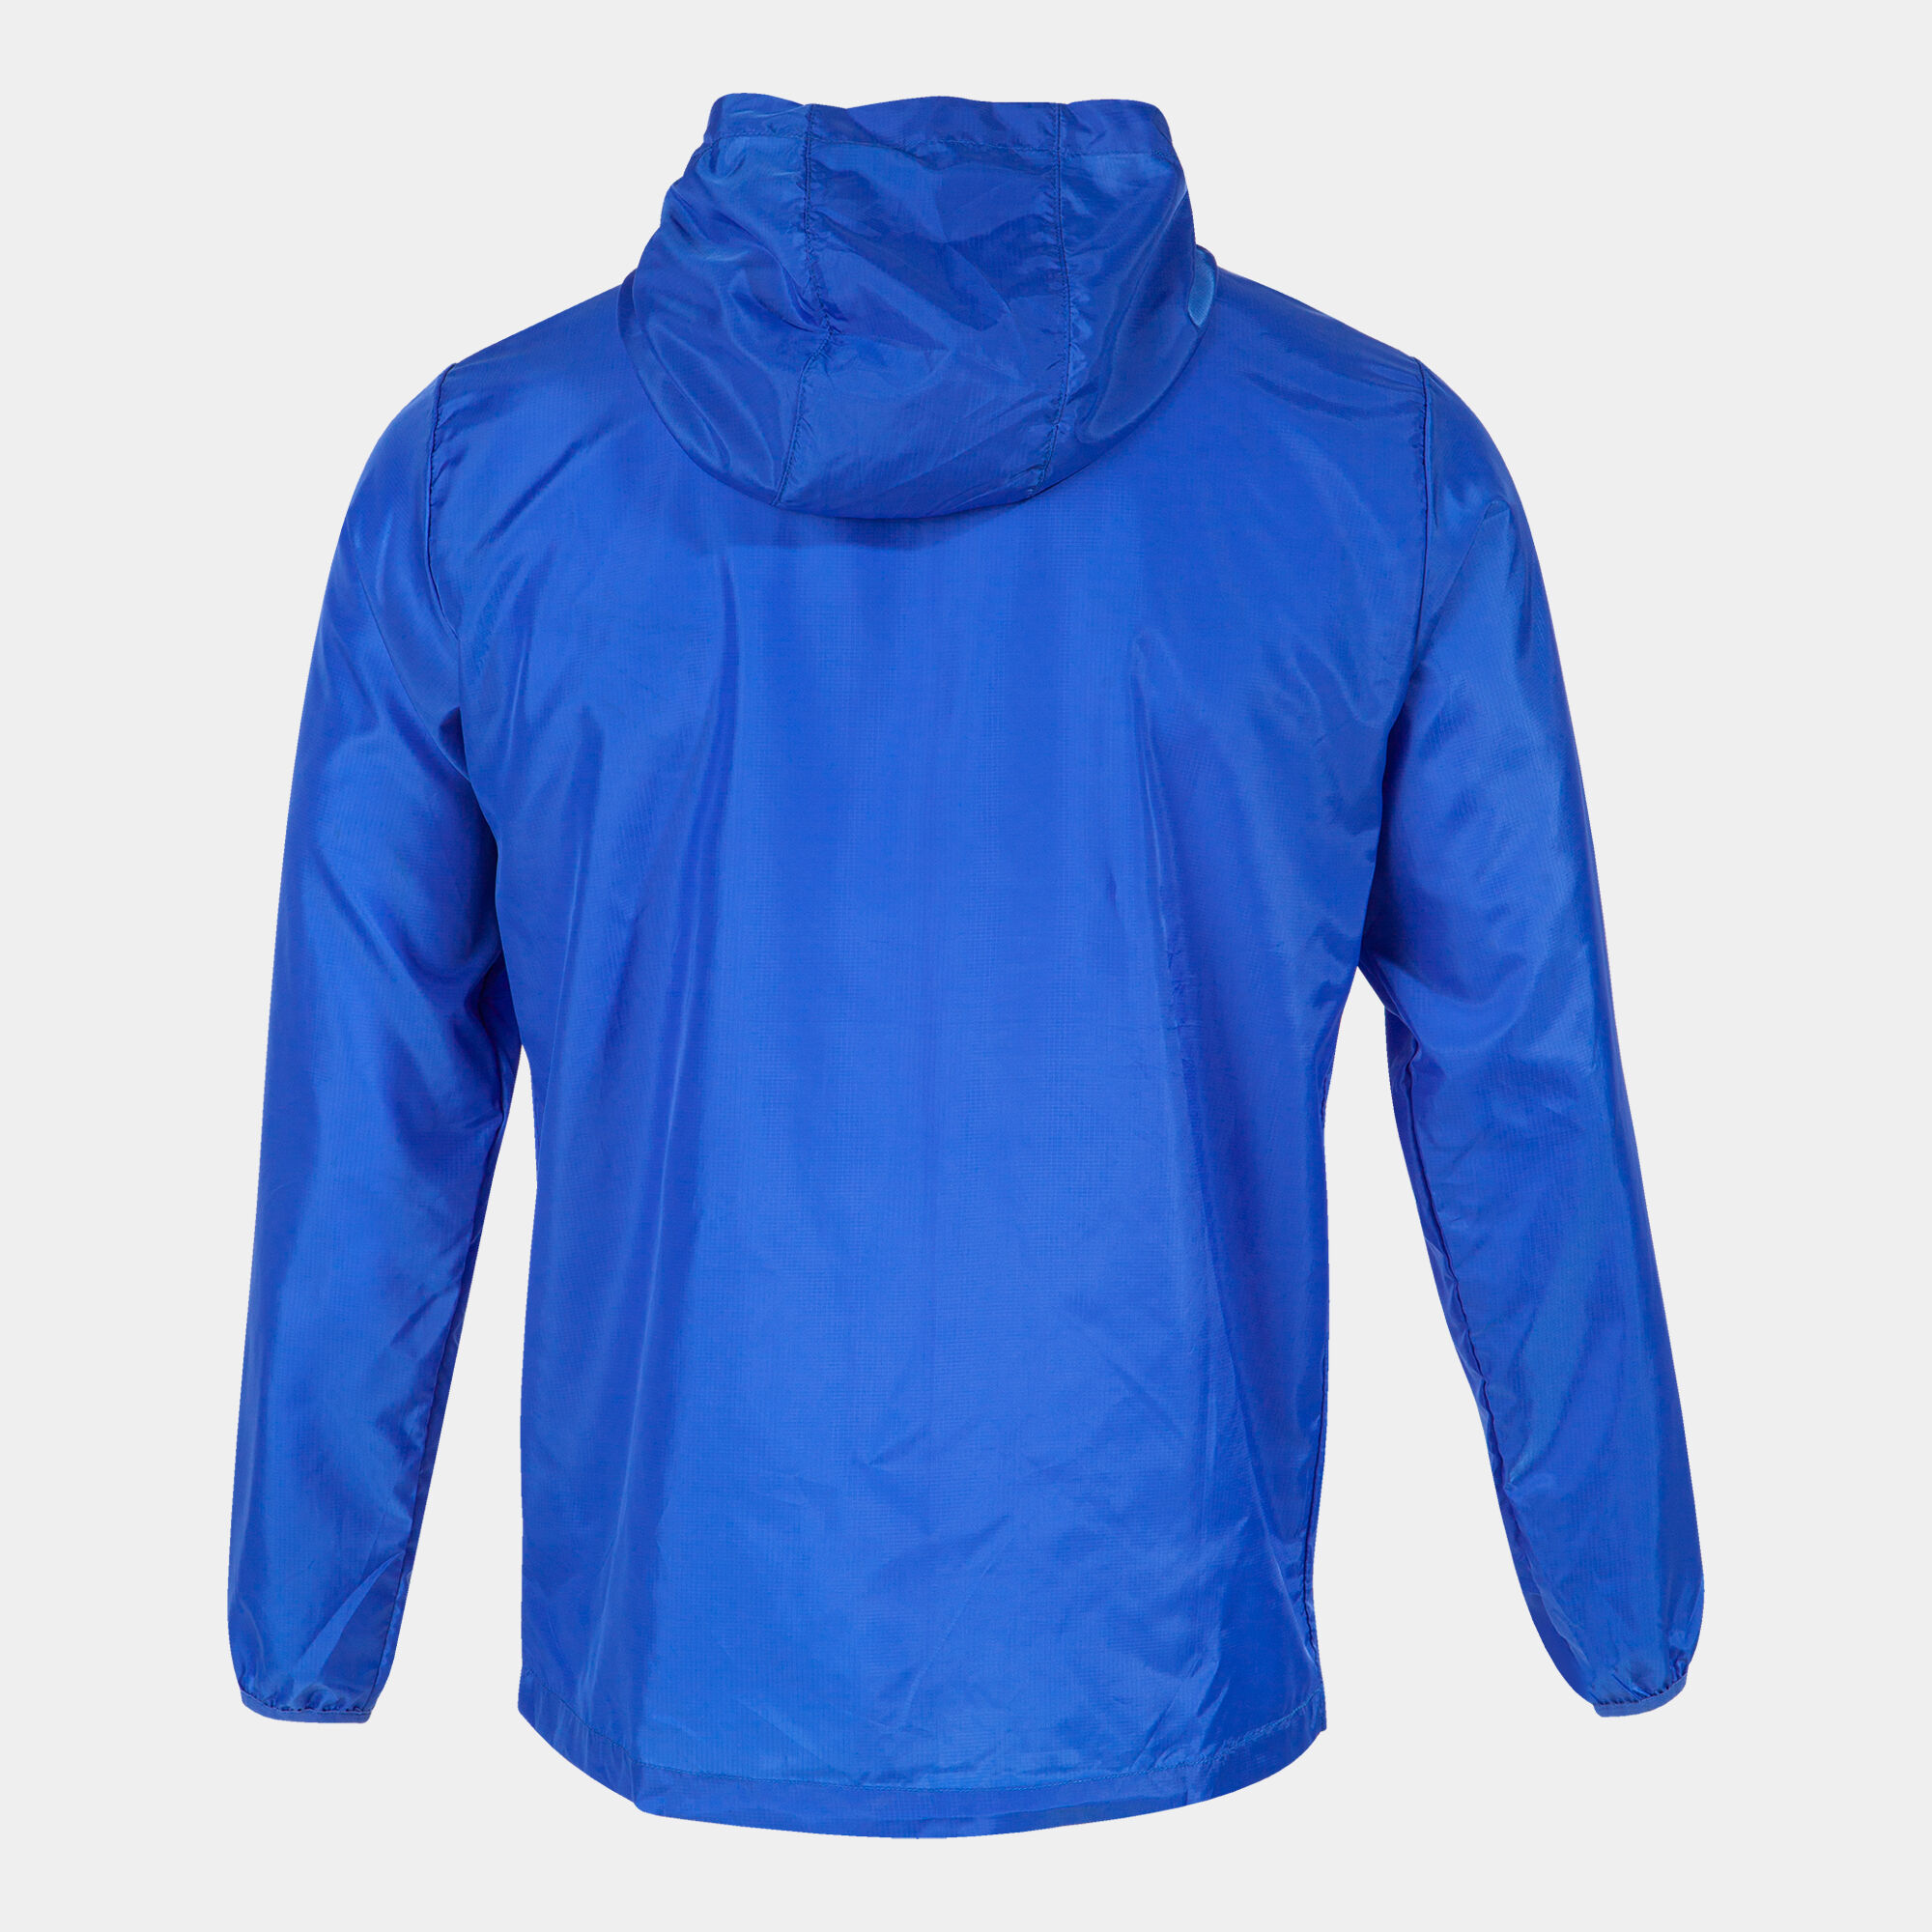 Athletic Works AW Men's Green Blue Full Zip Windbreaker Light Rain Jacket  Size L